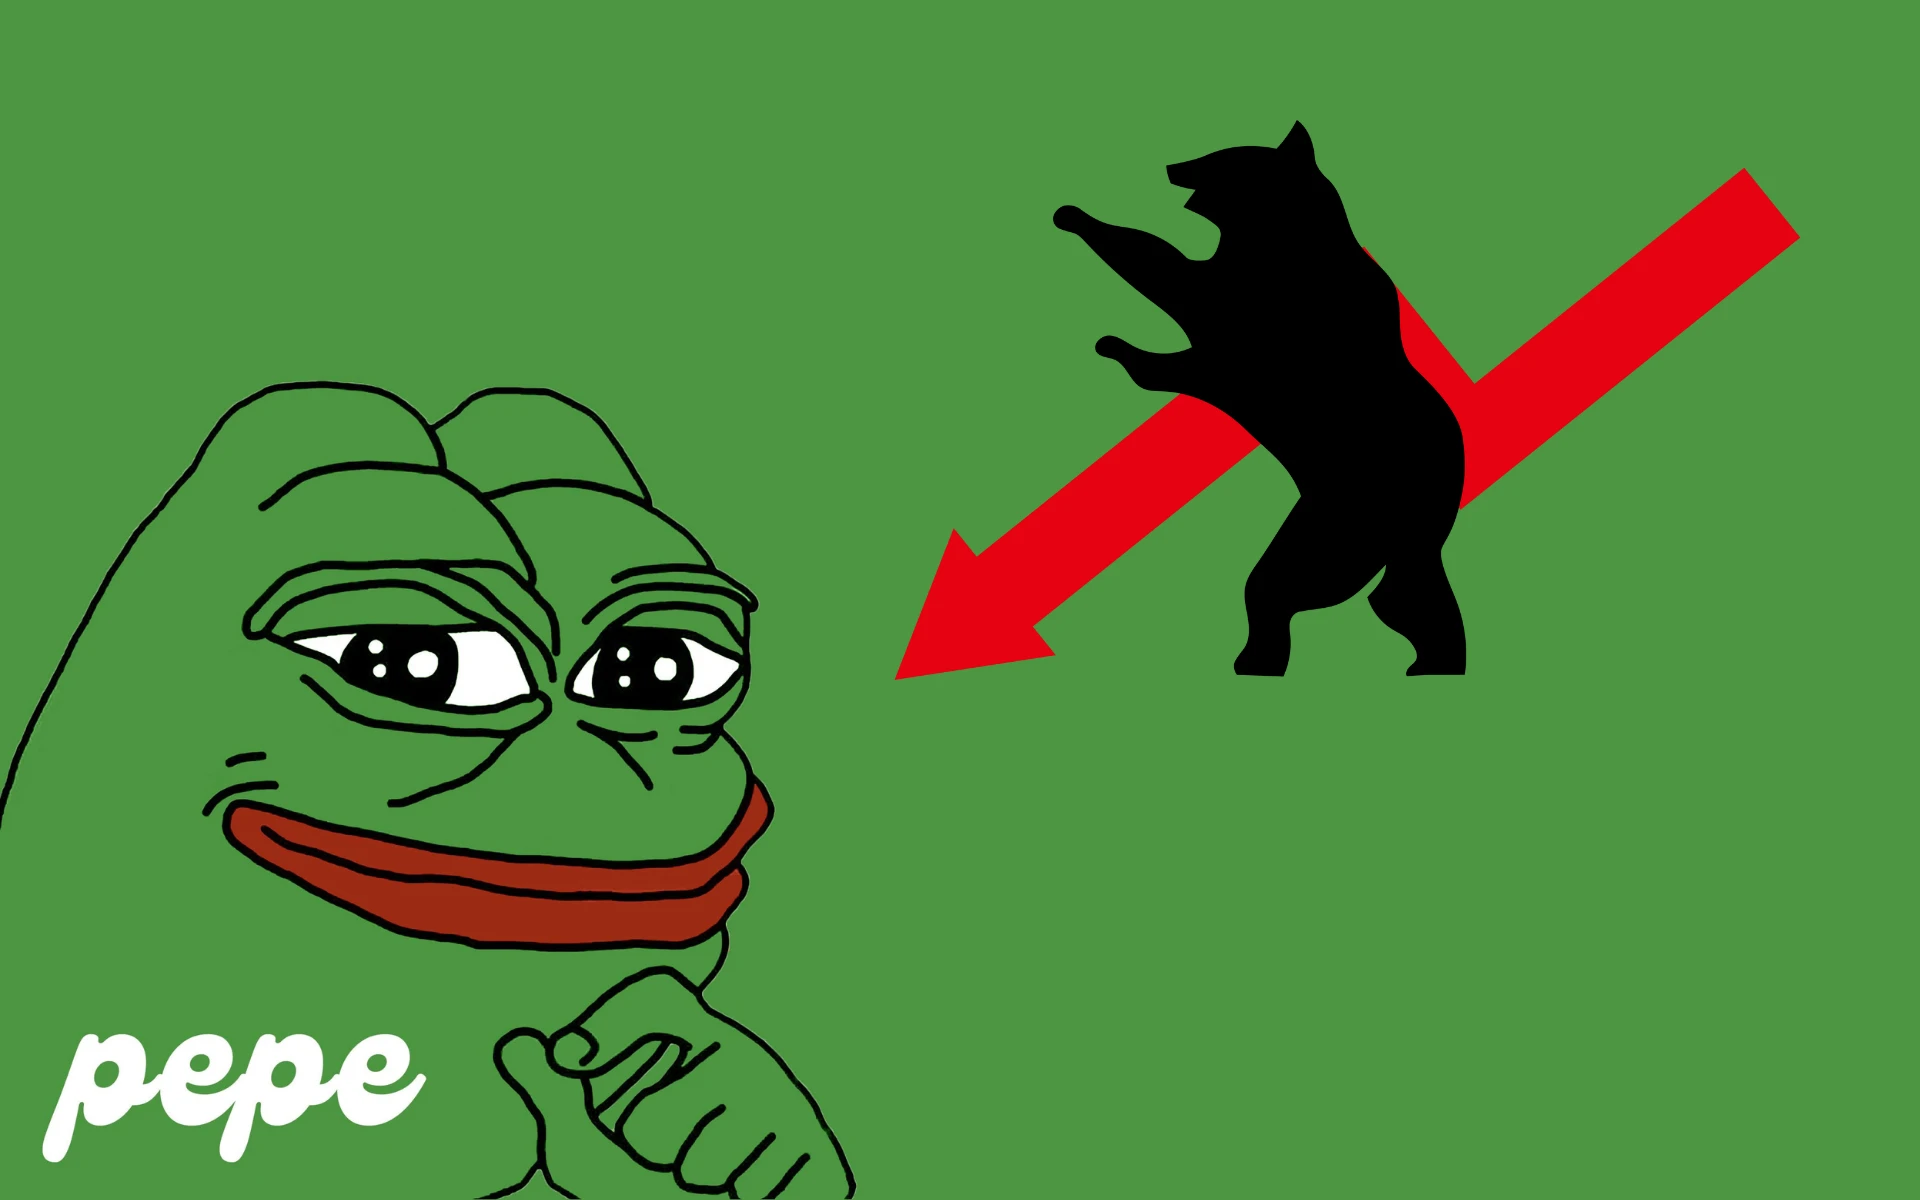 Szakértők szerint a Pepe tovább erősödhet, a Meme Kombat mégis jobb befektetés